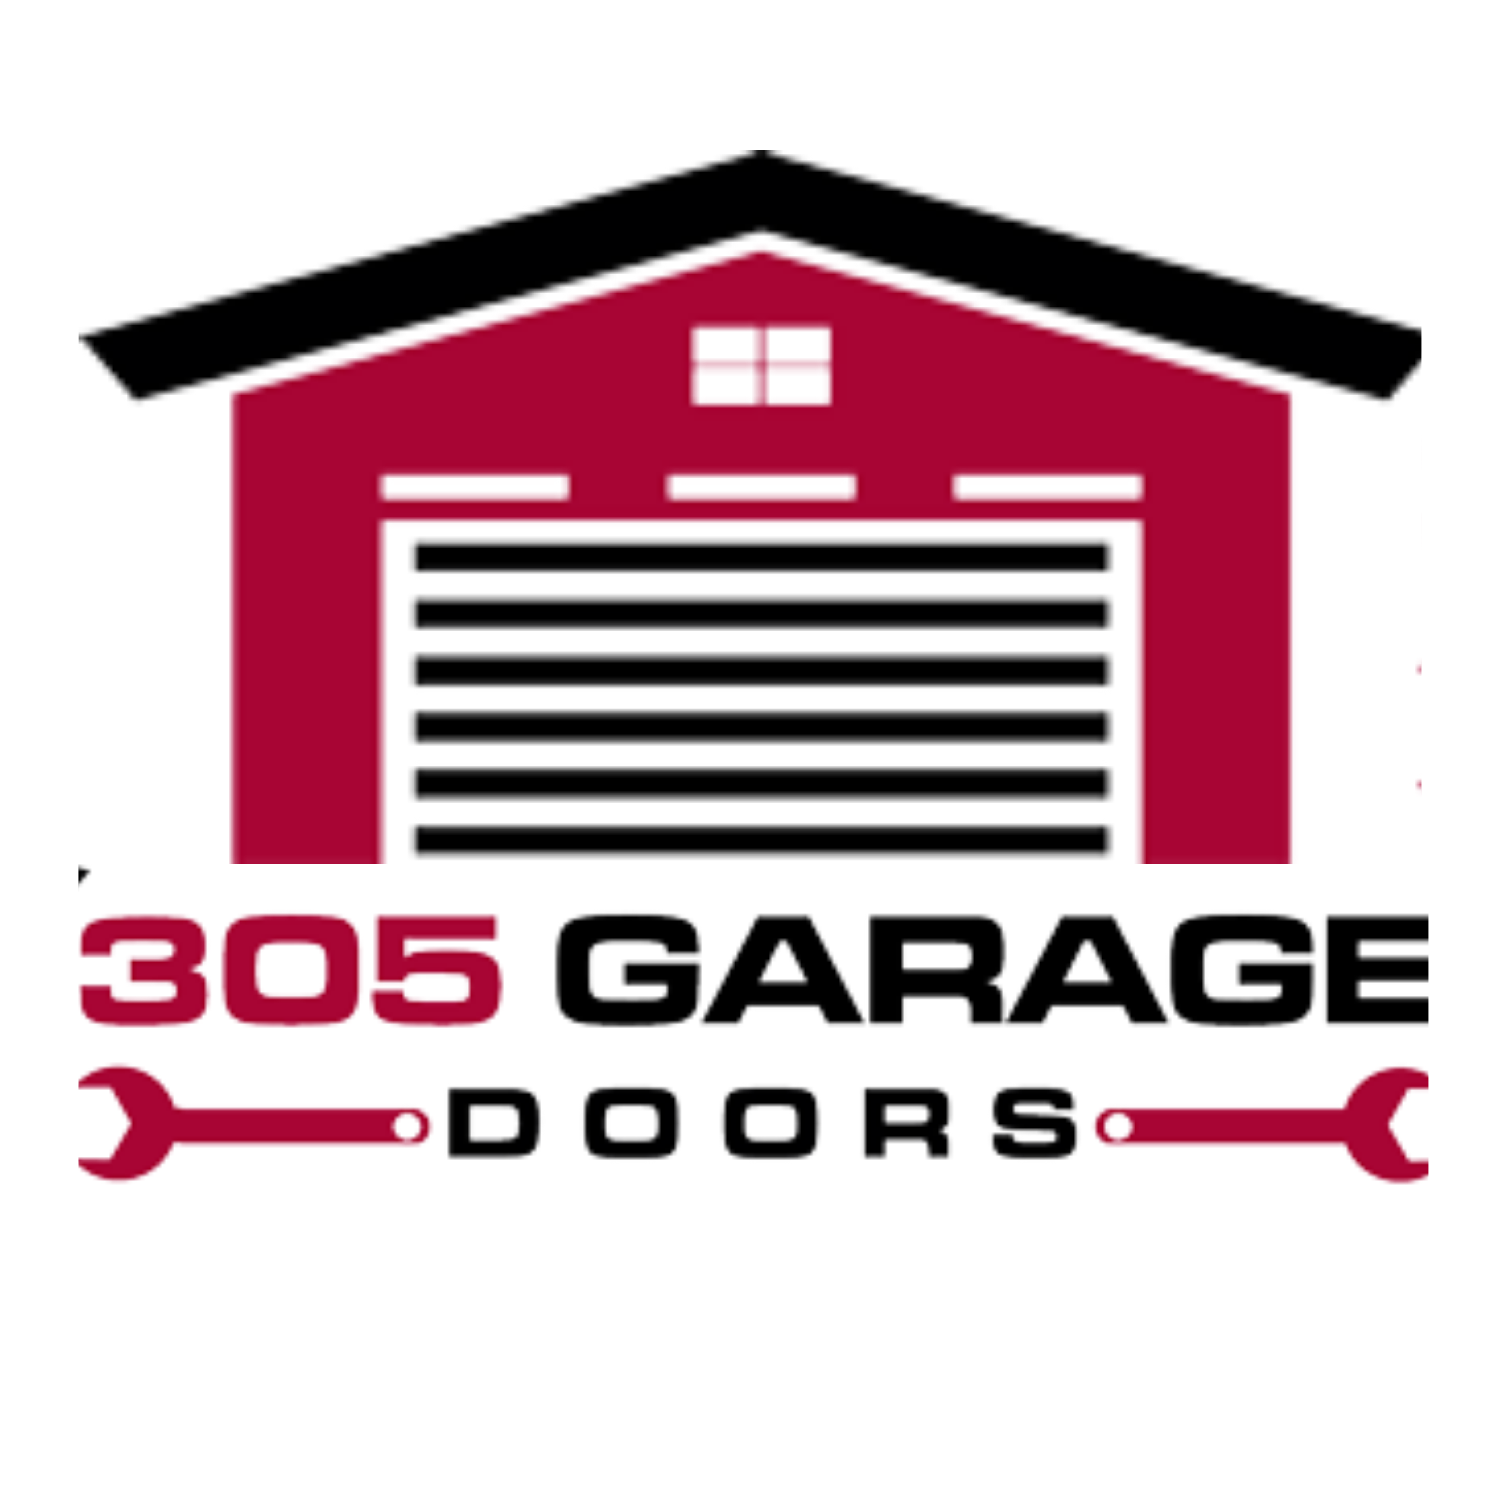 305 Garage Doors